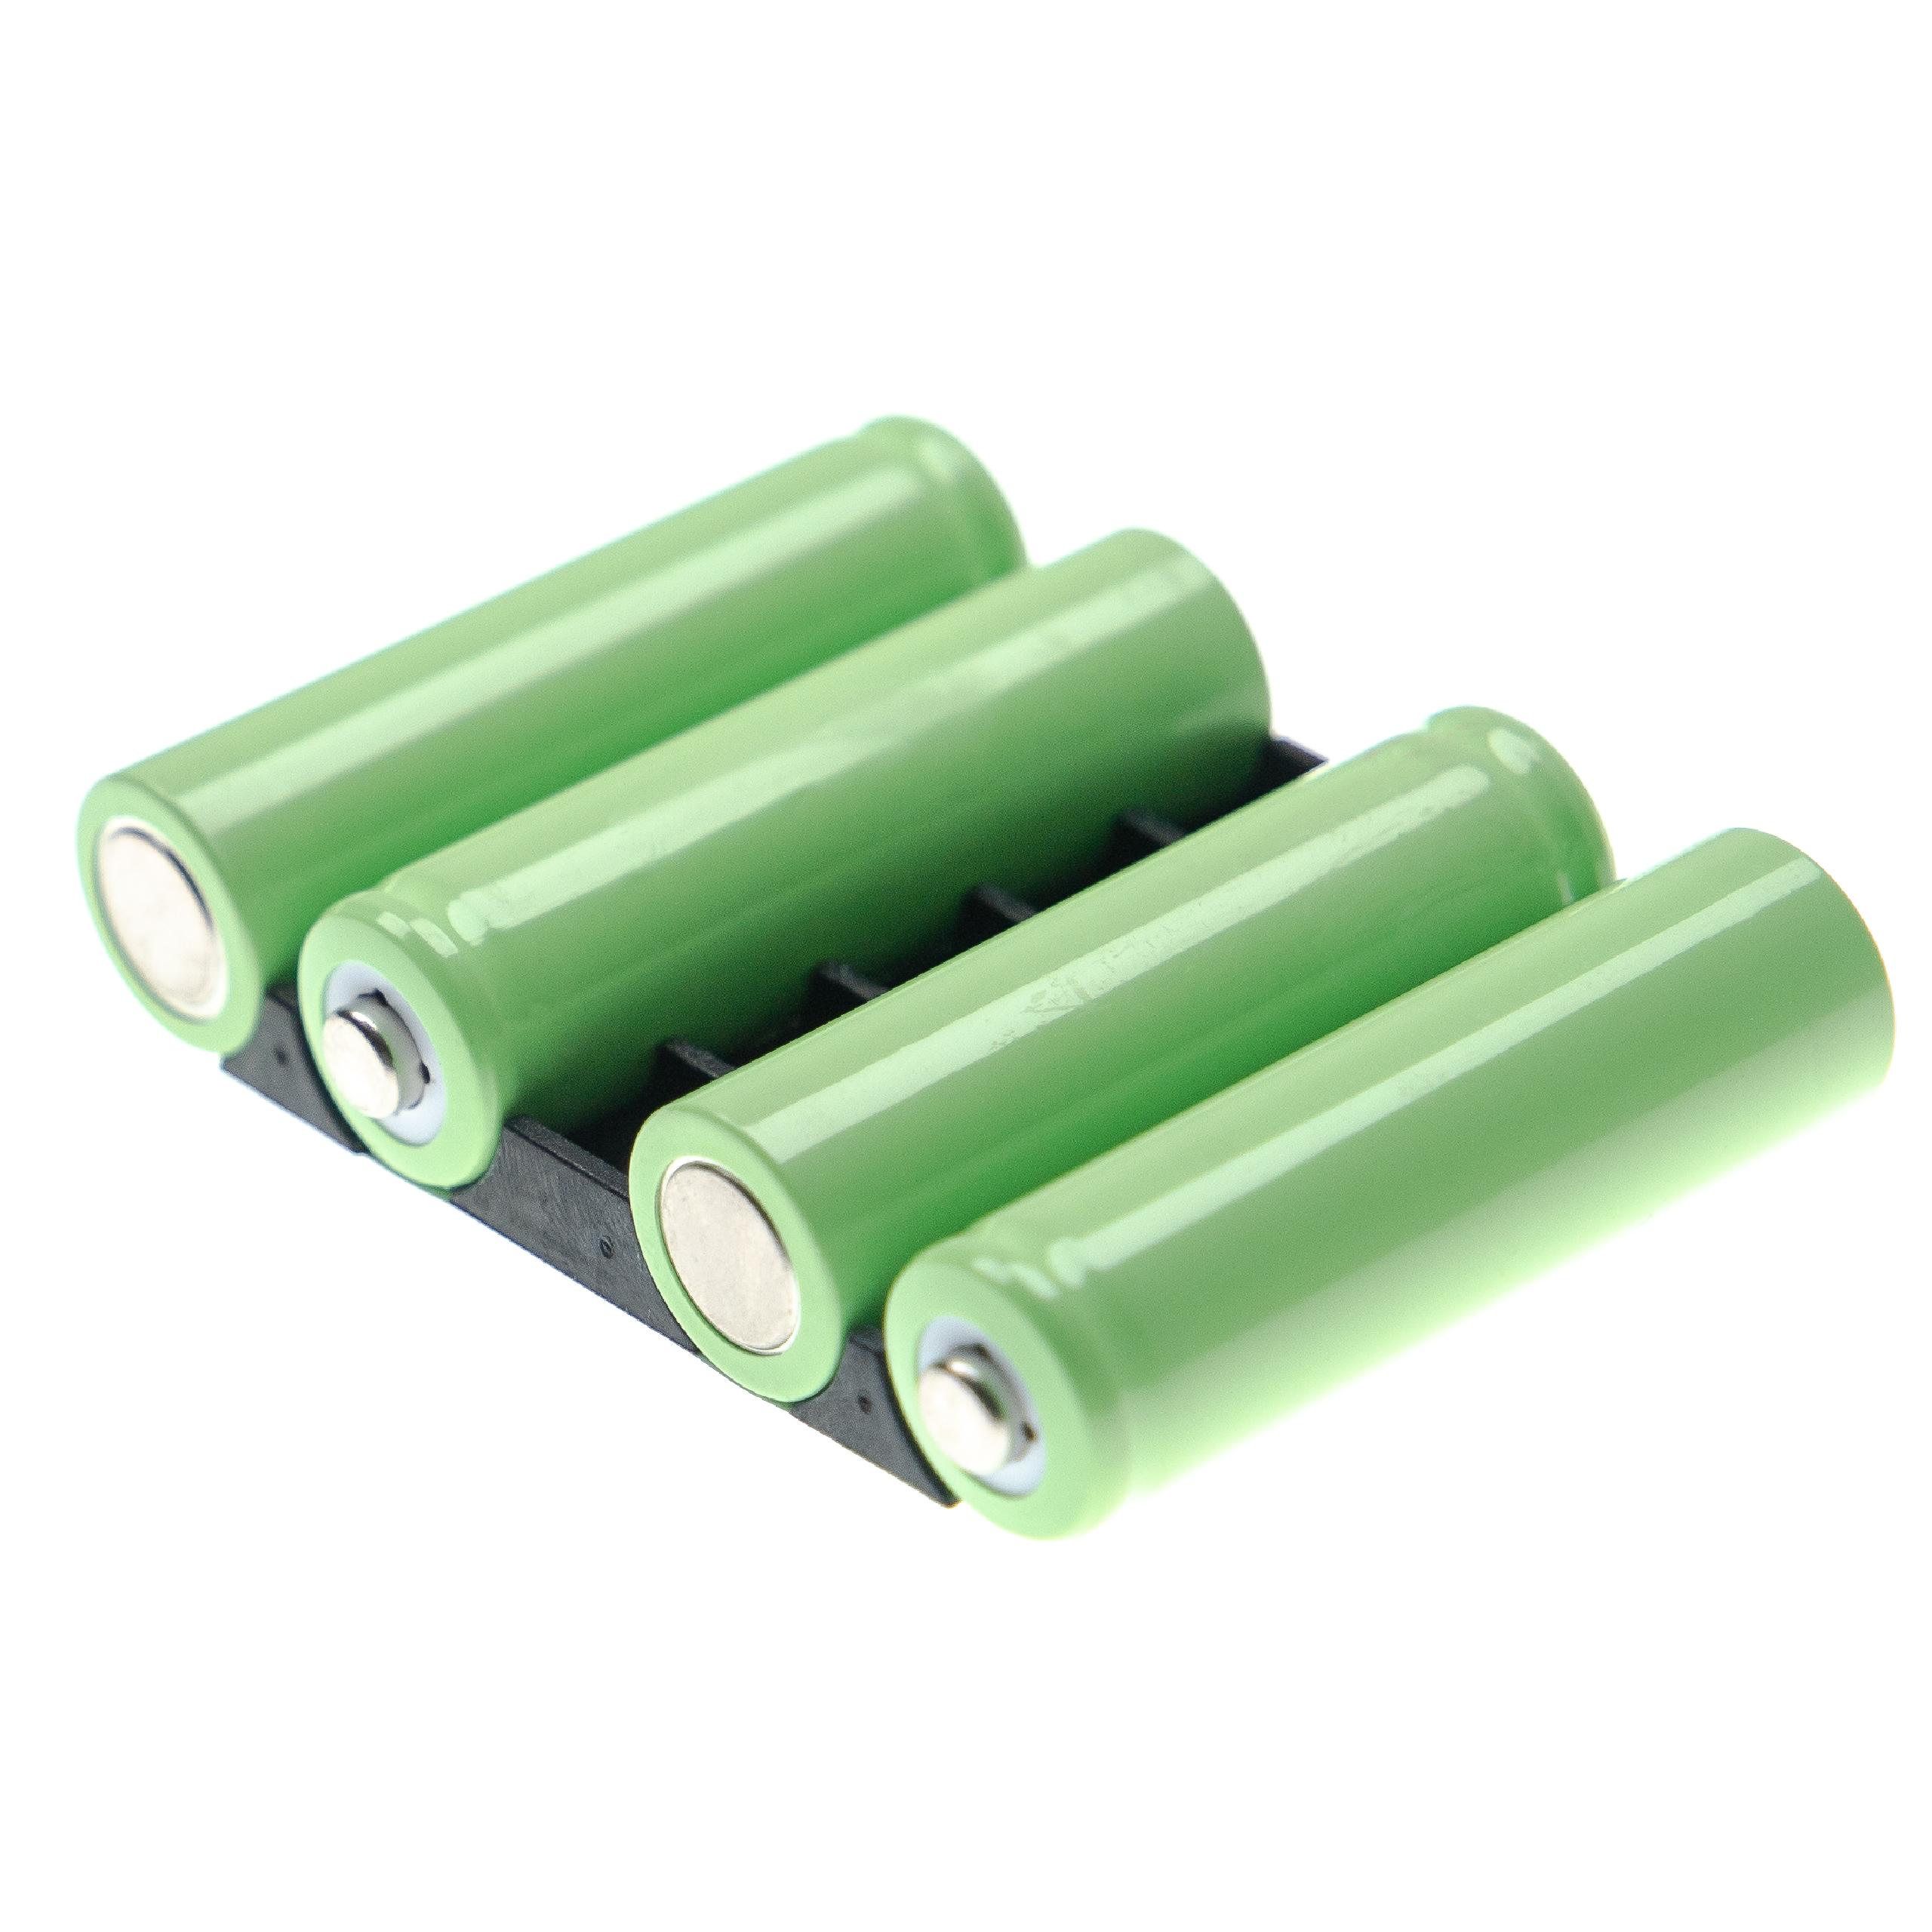 Batterie remplace Peli 3765-301-000 pour lampe de poche - 1500mAh 4,8V NiMH